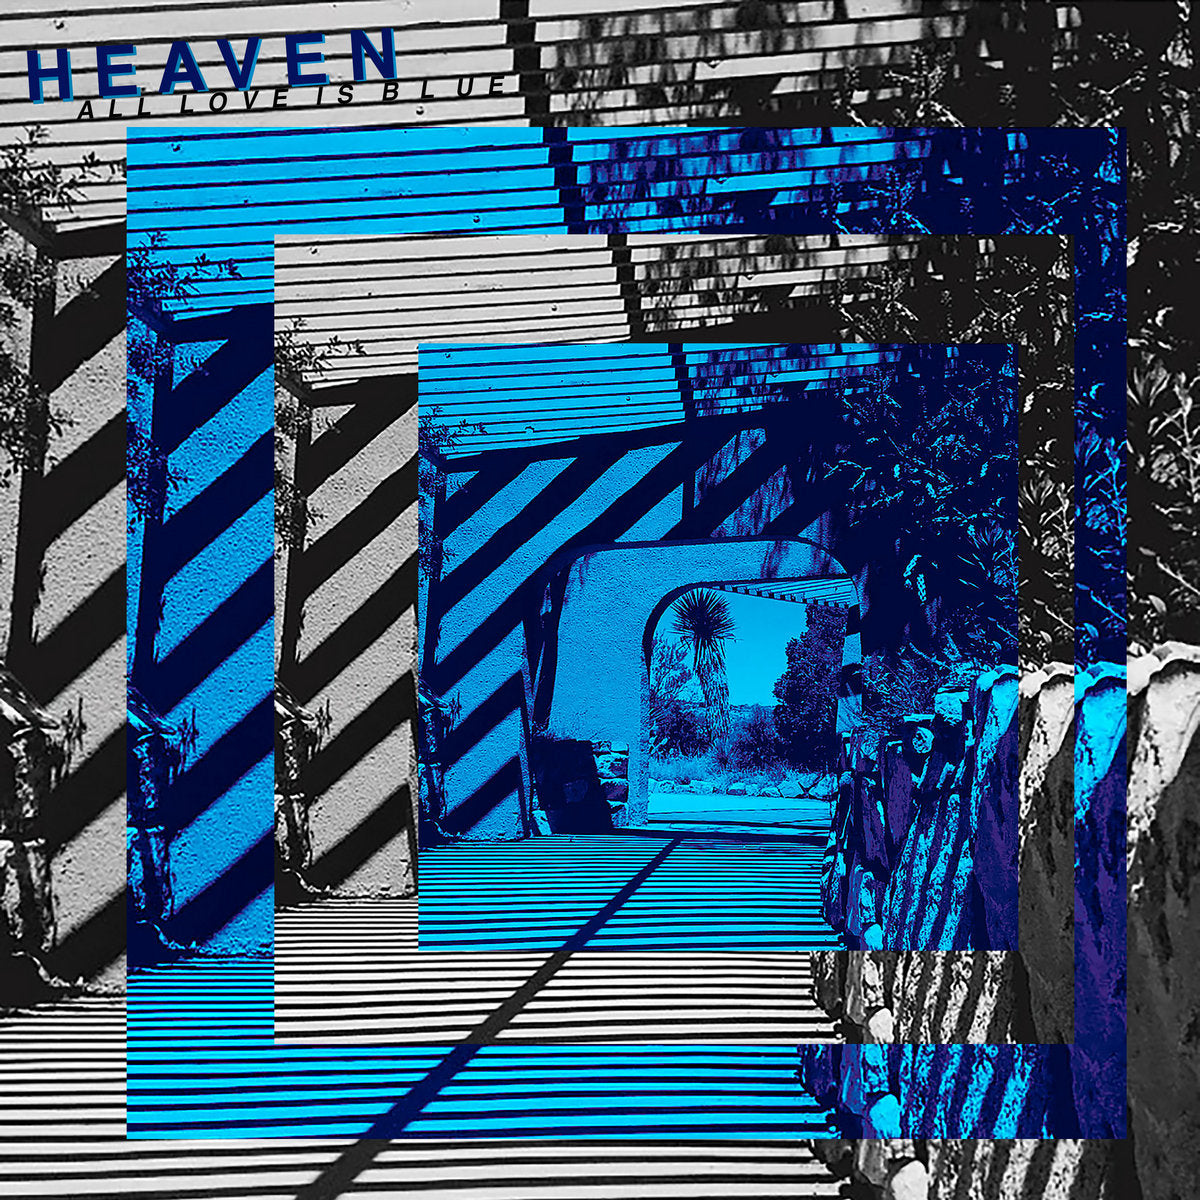 Heaven - All Love is Blue